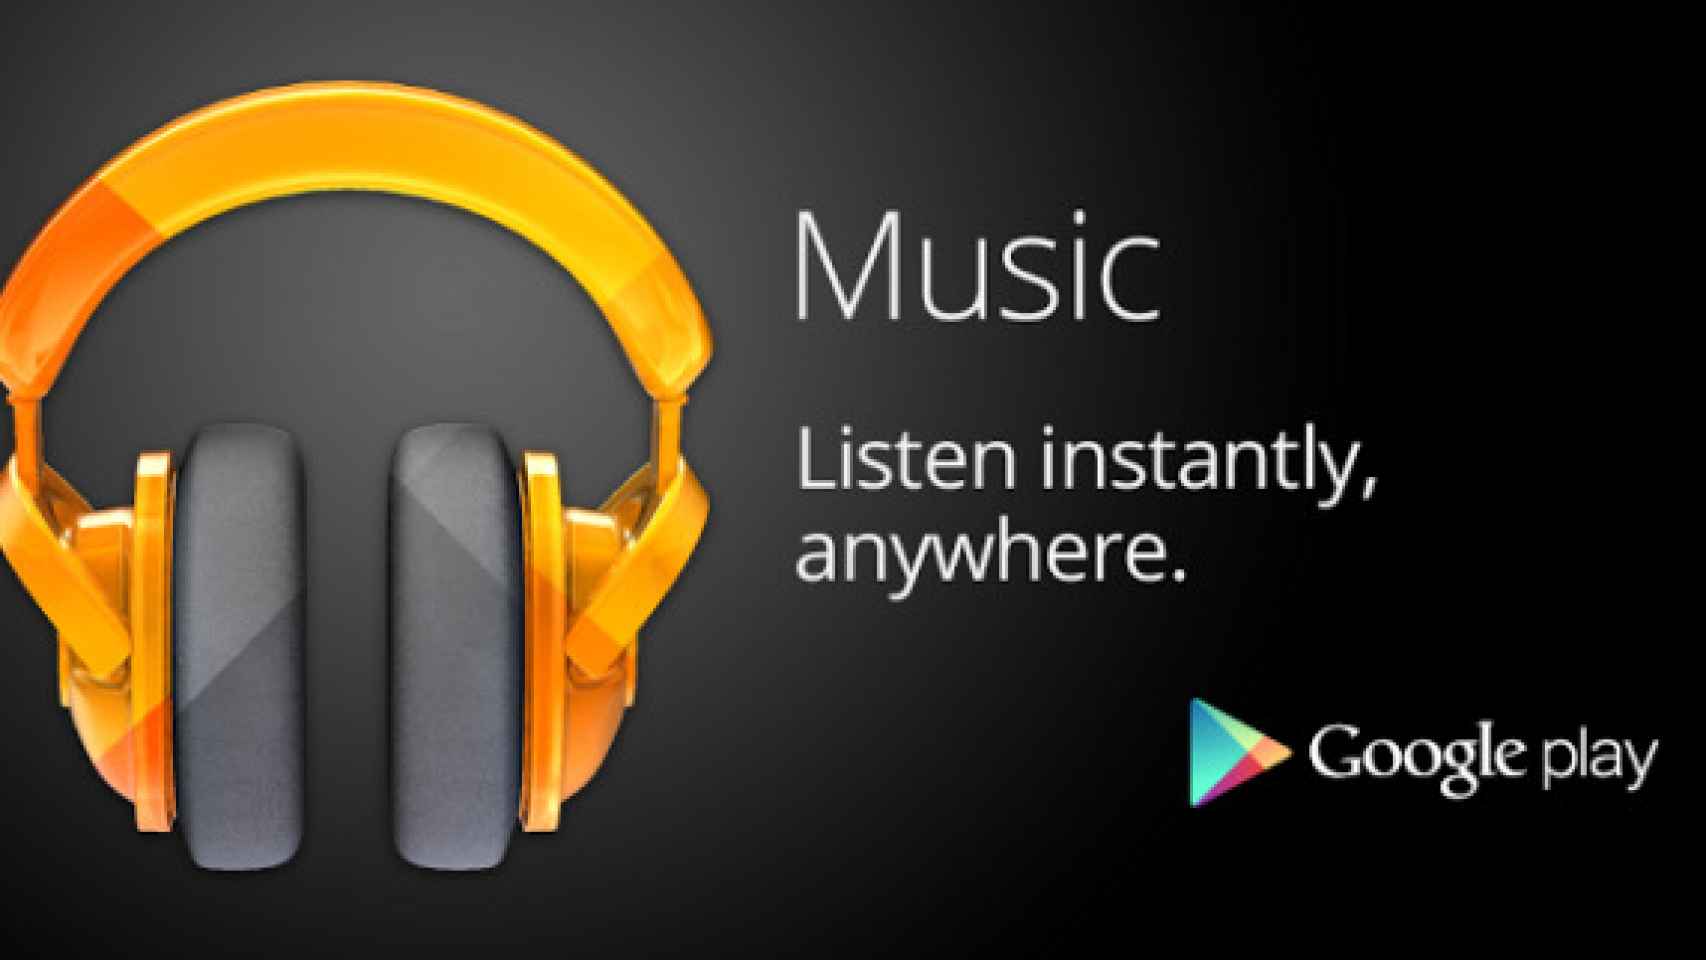 Google Play Music se actualiza con mejoras en la carga de canciones y menor uso de datos